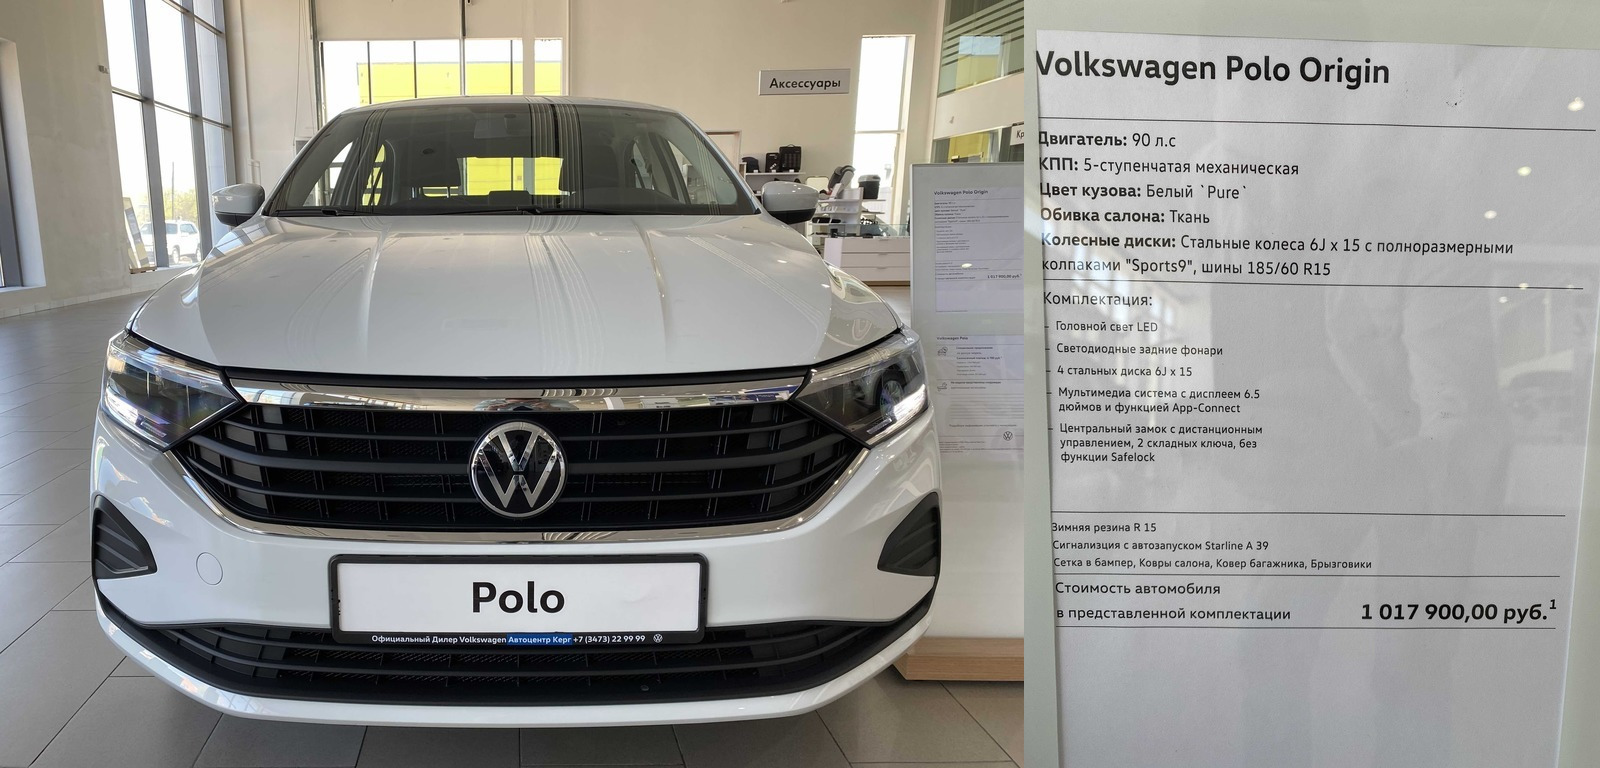 Volkswagen Polo liftback в базовой комплектации, лето 2021 года